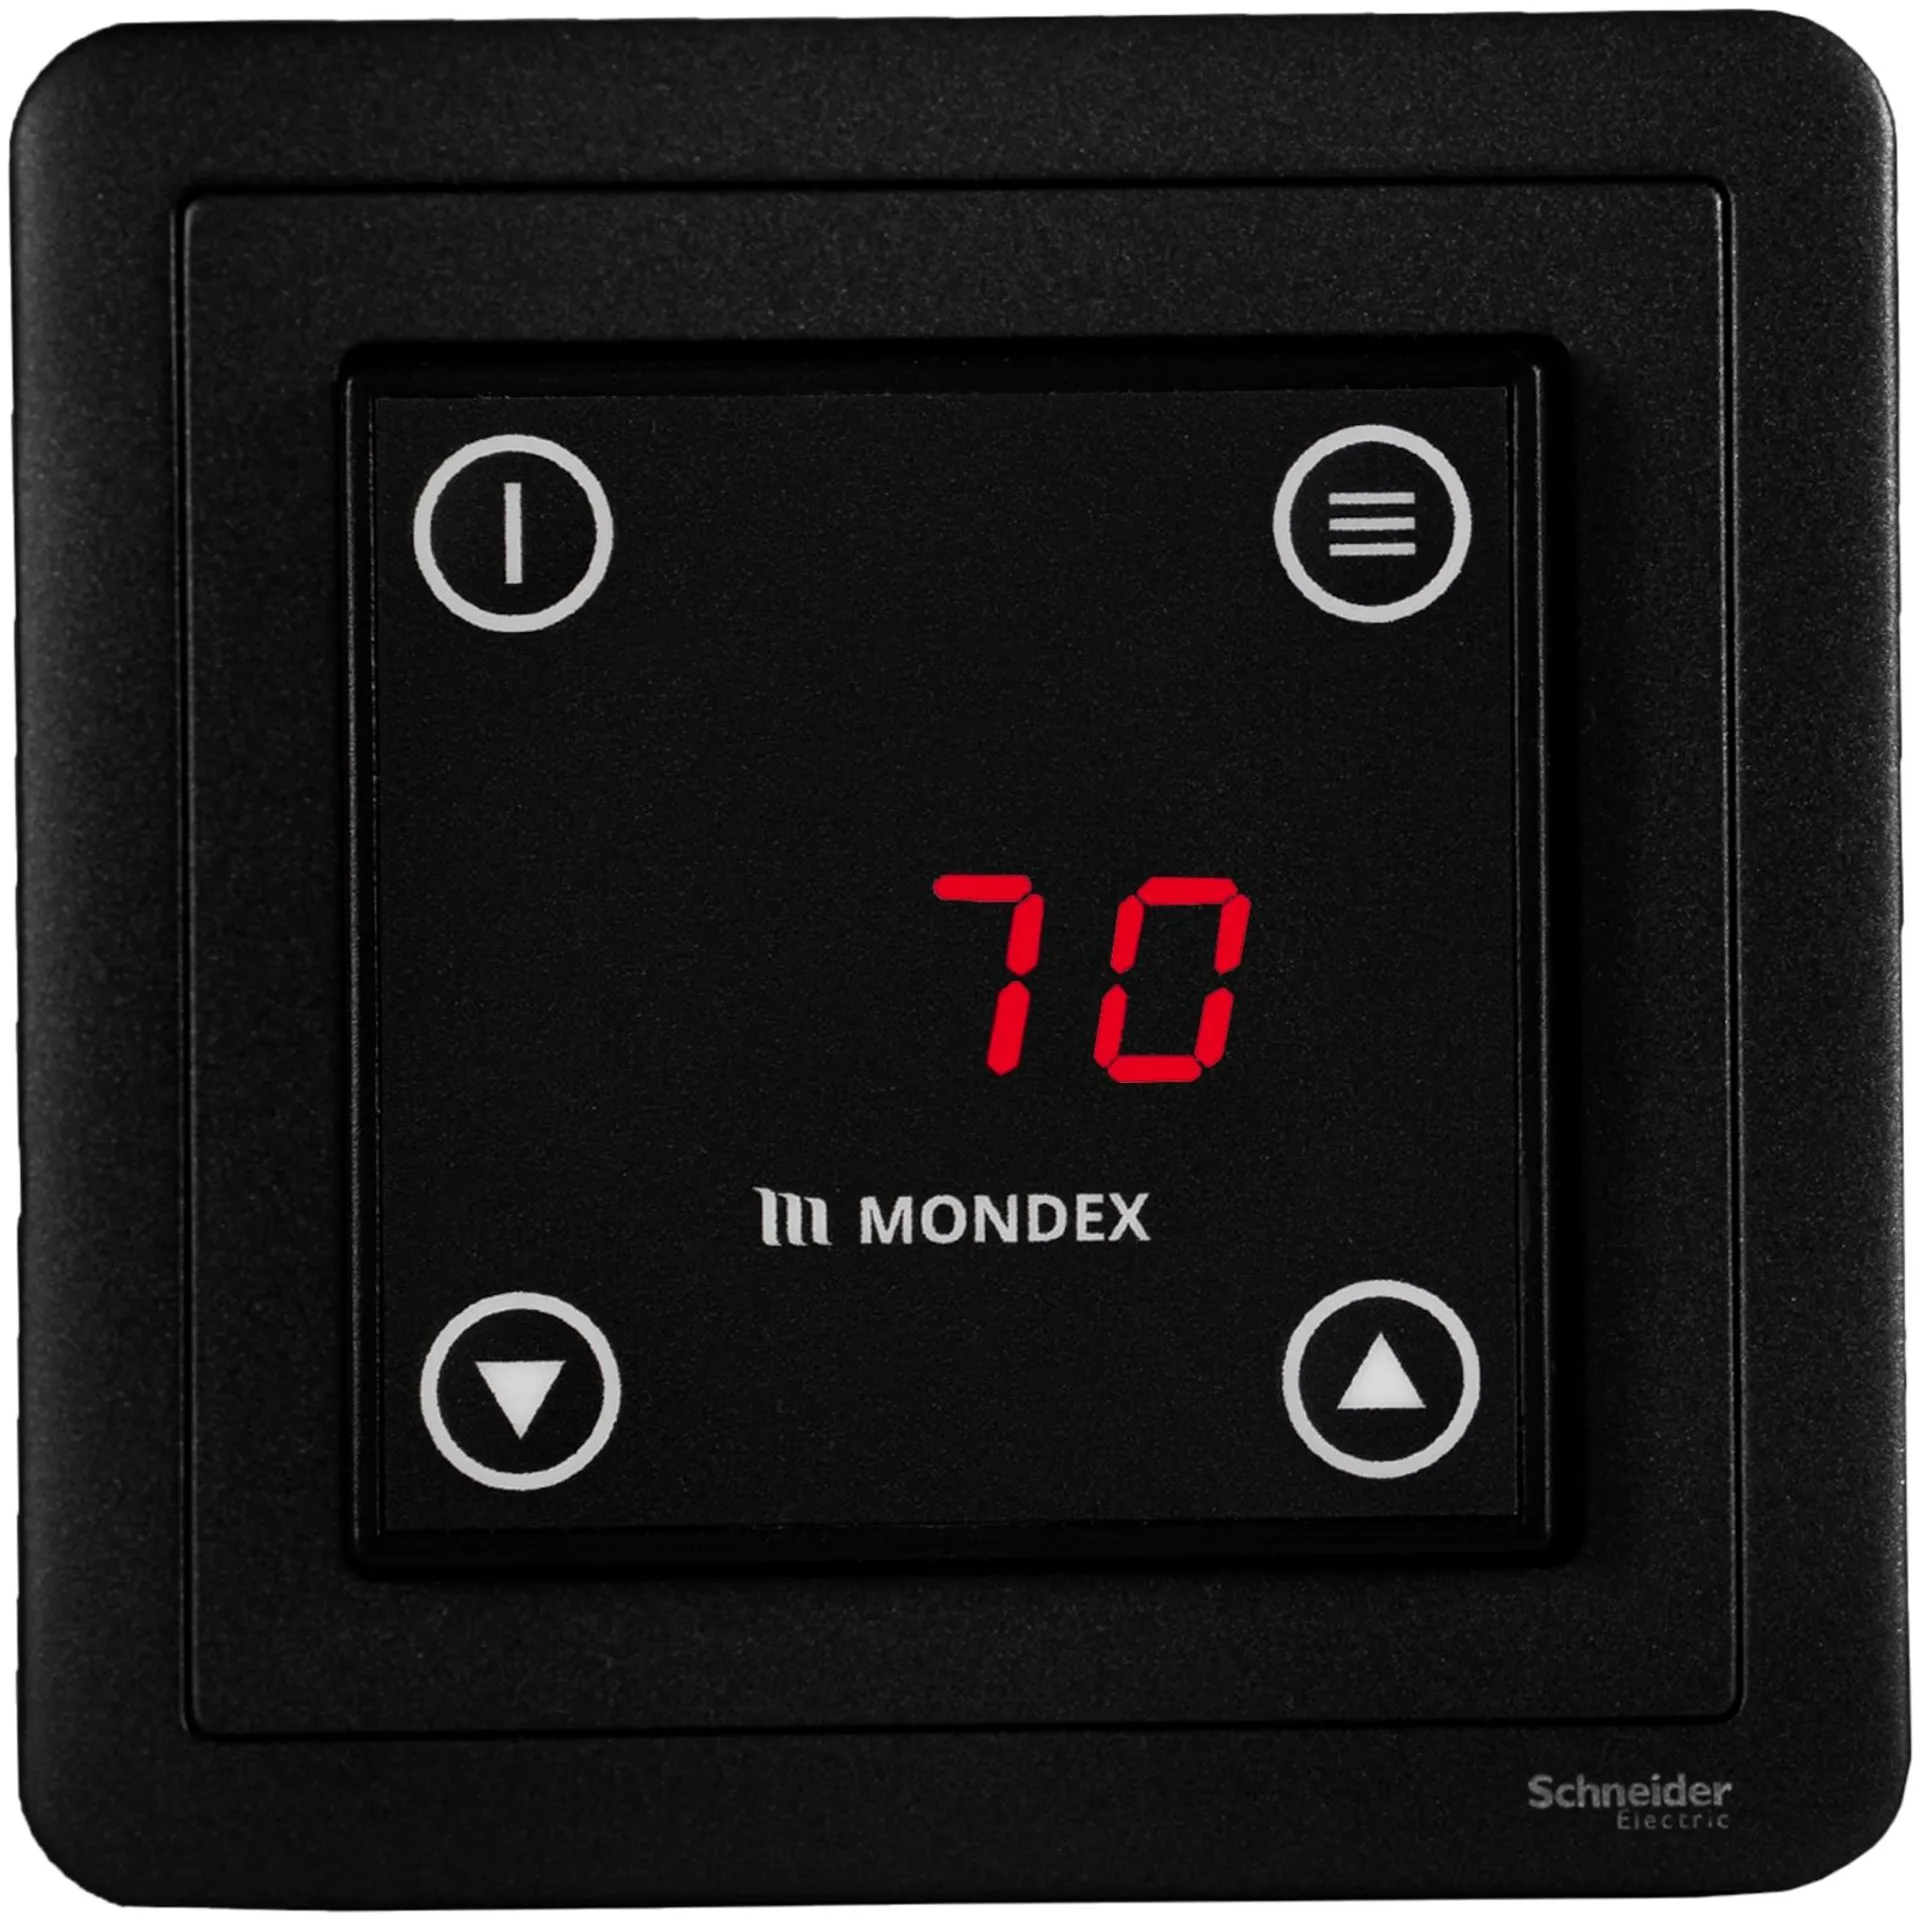 Sähkökiuas Mondex Louhi E2 9.0 KW - 2